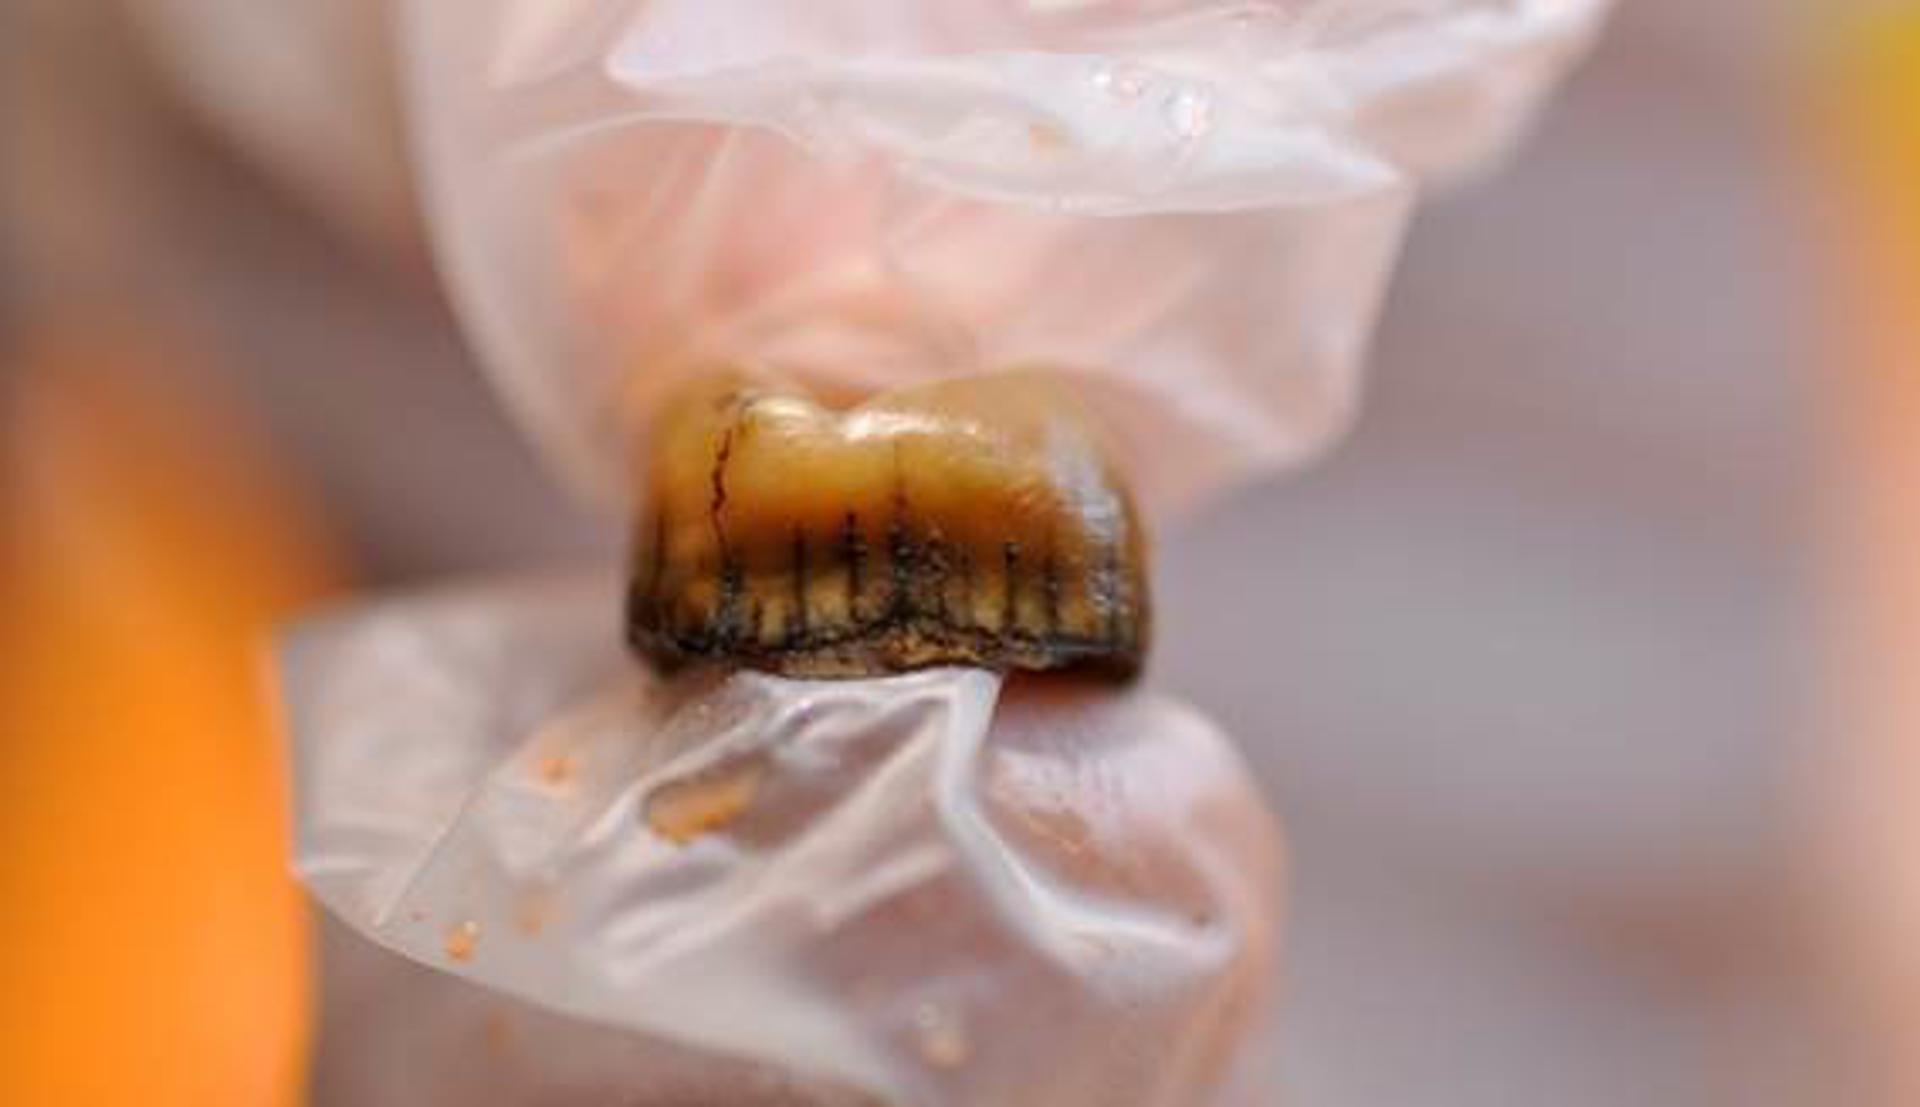 Detalle del diente neandertal recuperado en la Cova Simanya./ Fotografía facilitada pfor Juan I. Morales-IPHES-CERCA. EFE